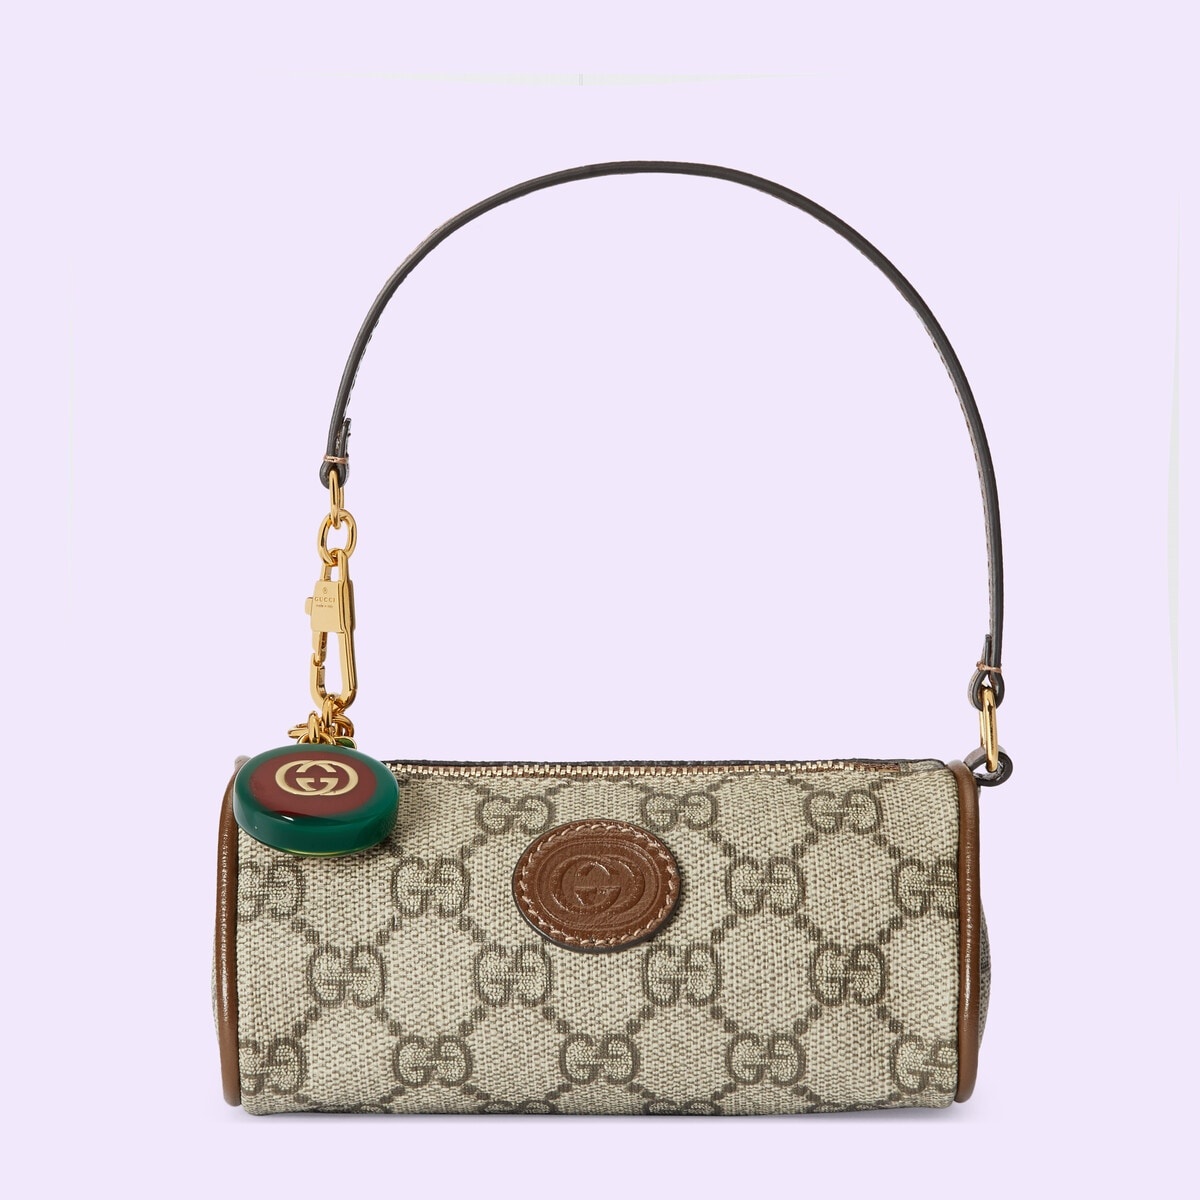 GG mini bag with charm - 1